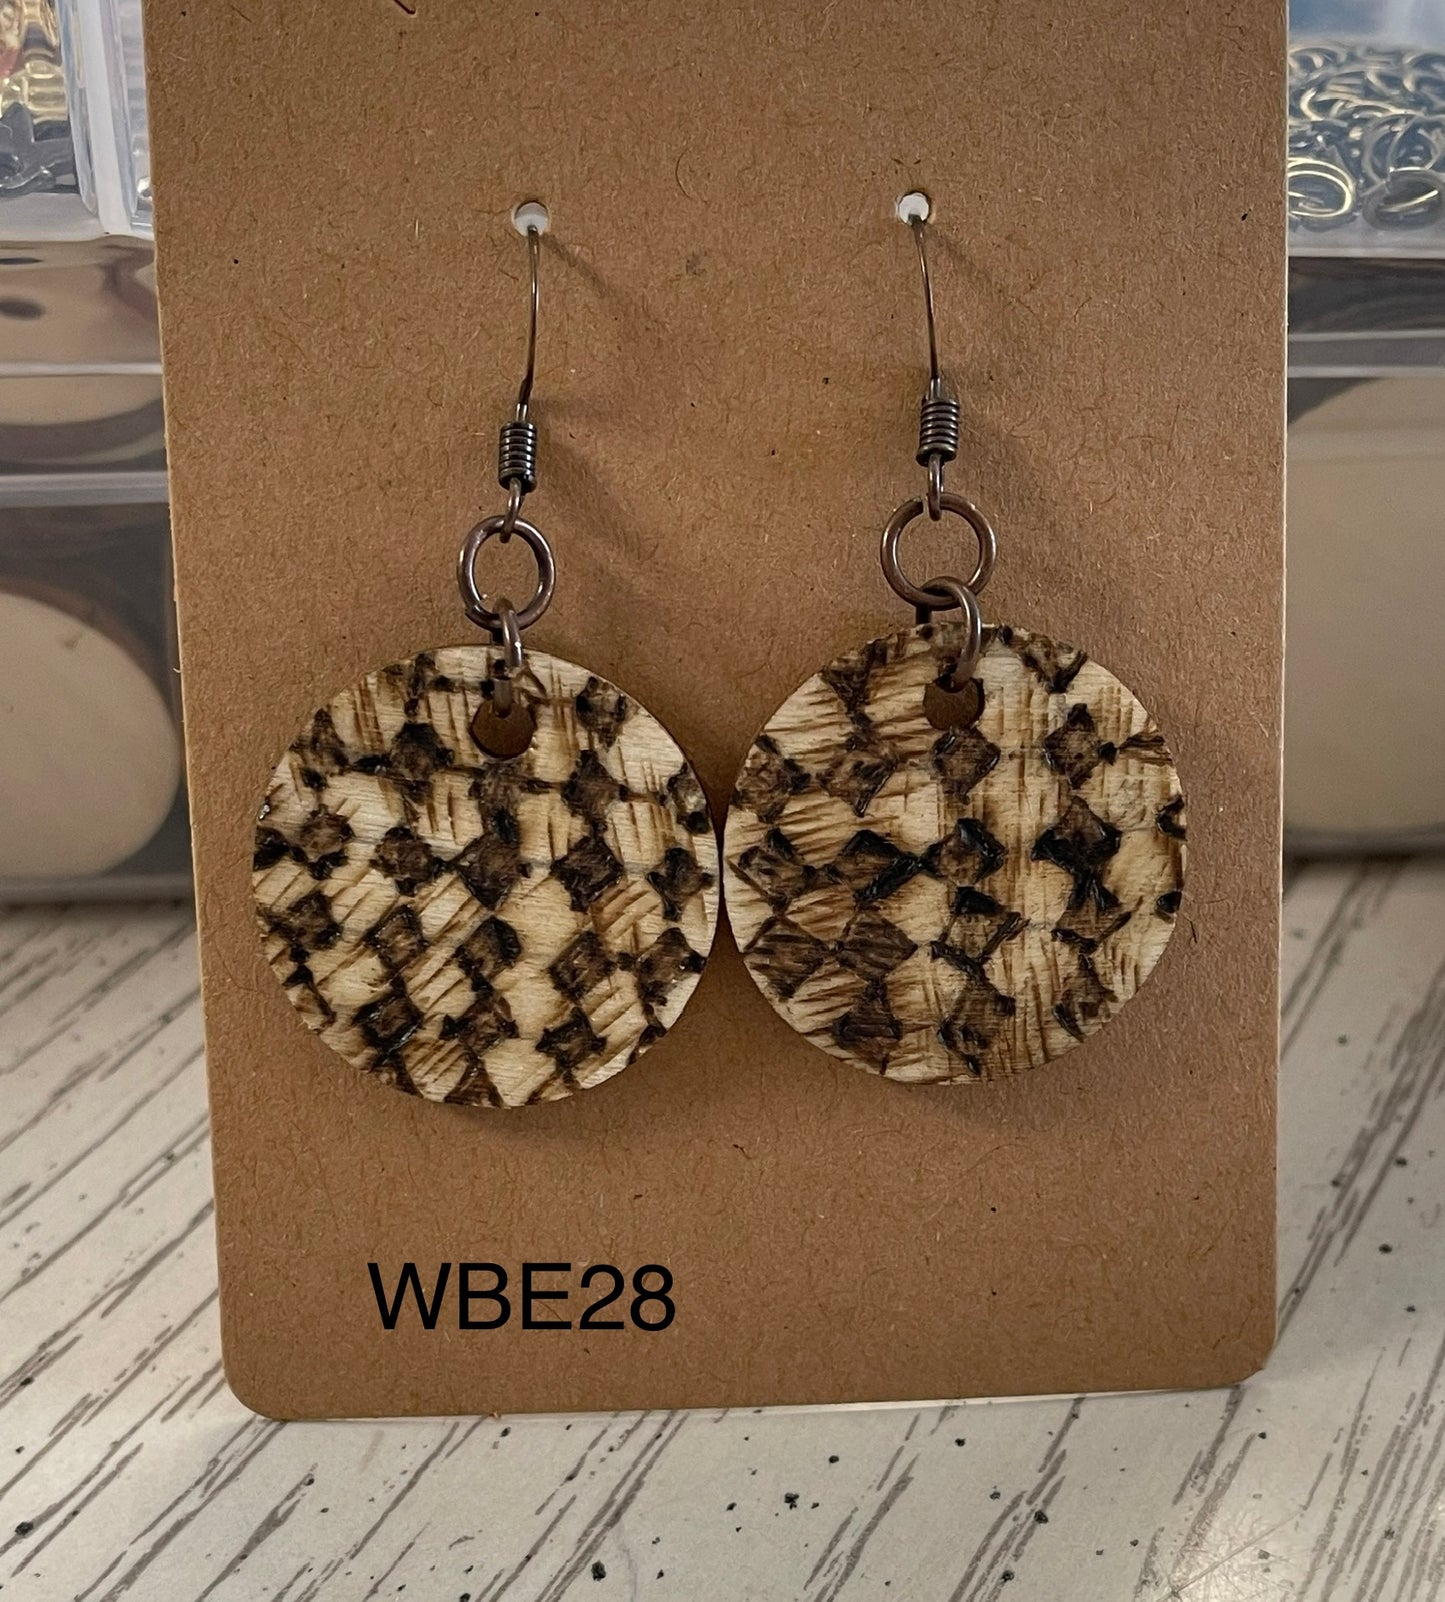 Wood burn diamond pattern earrings WBE28